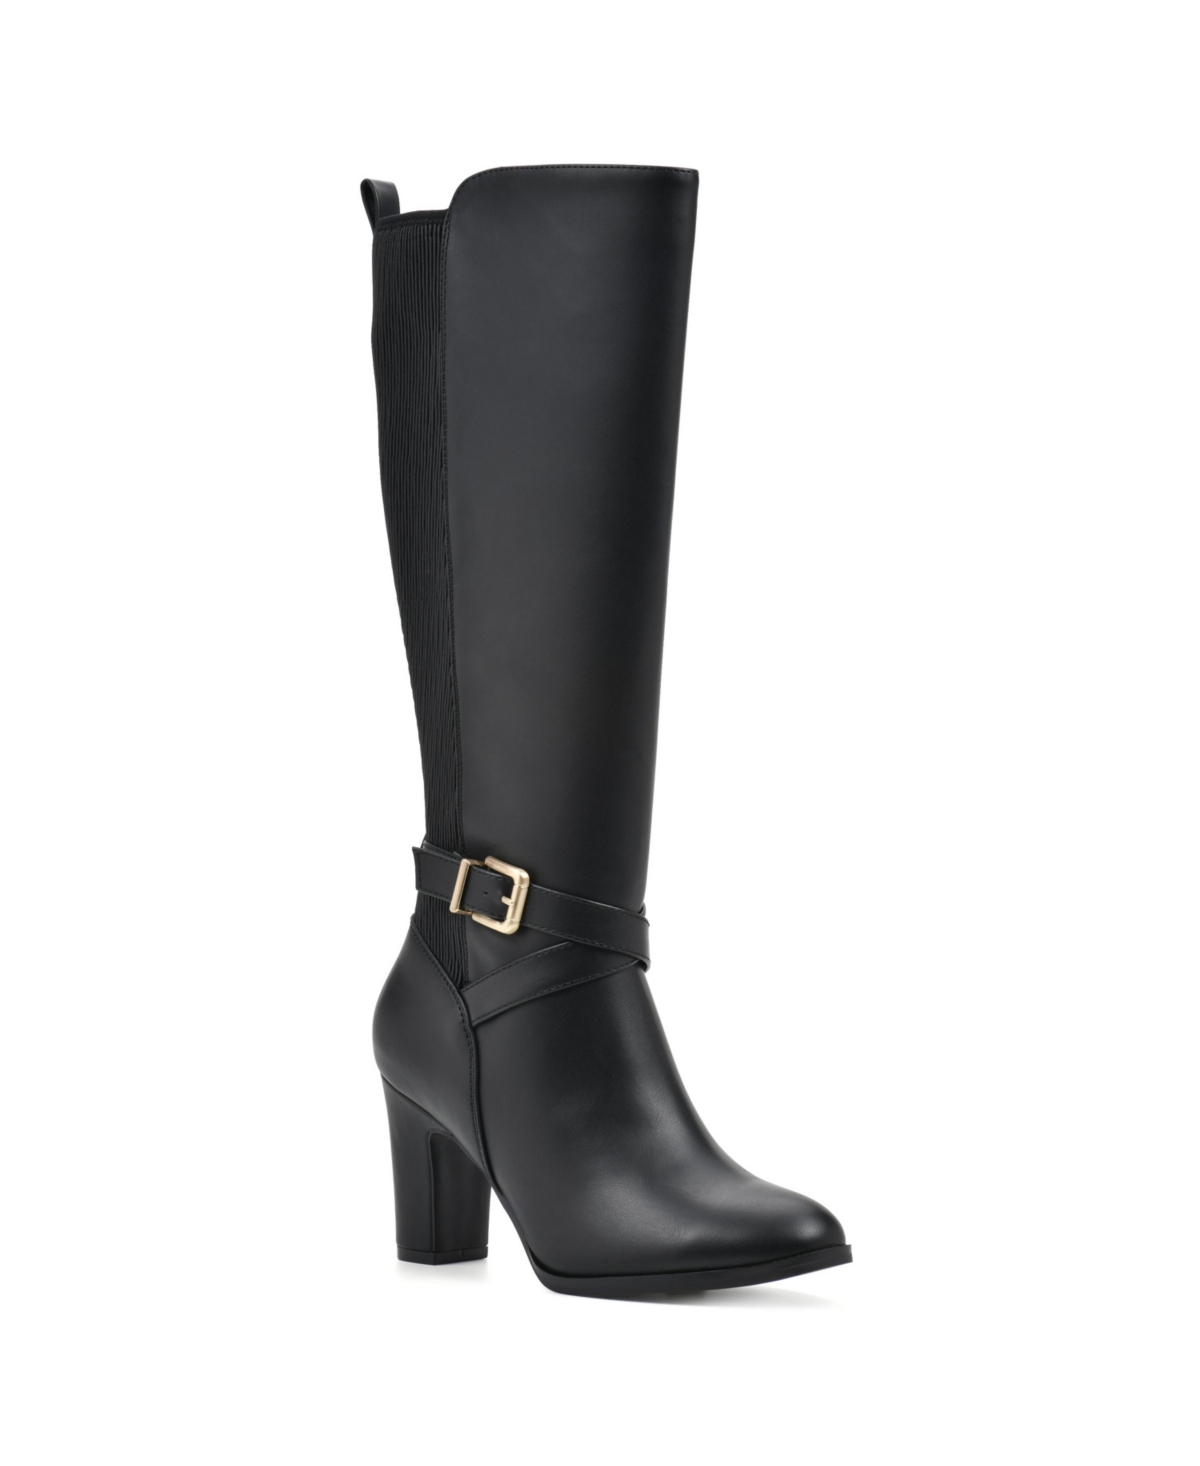 Women's Teals Regular Calf Knee High Dress Boots - Black Smooth